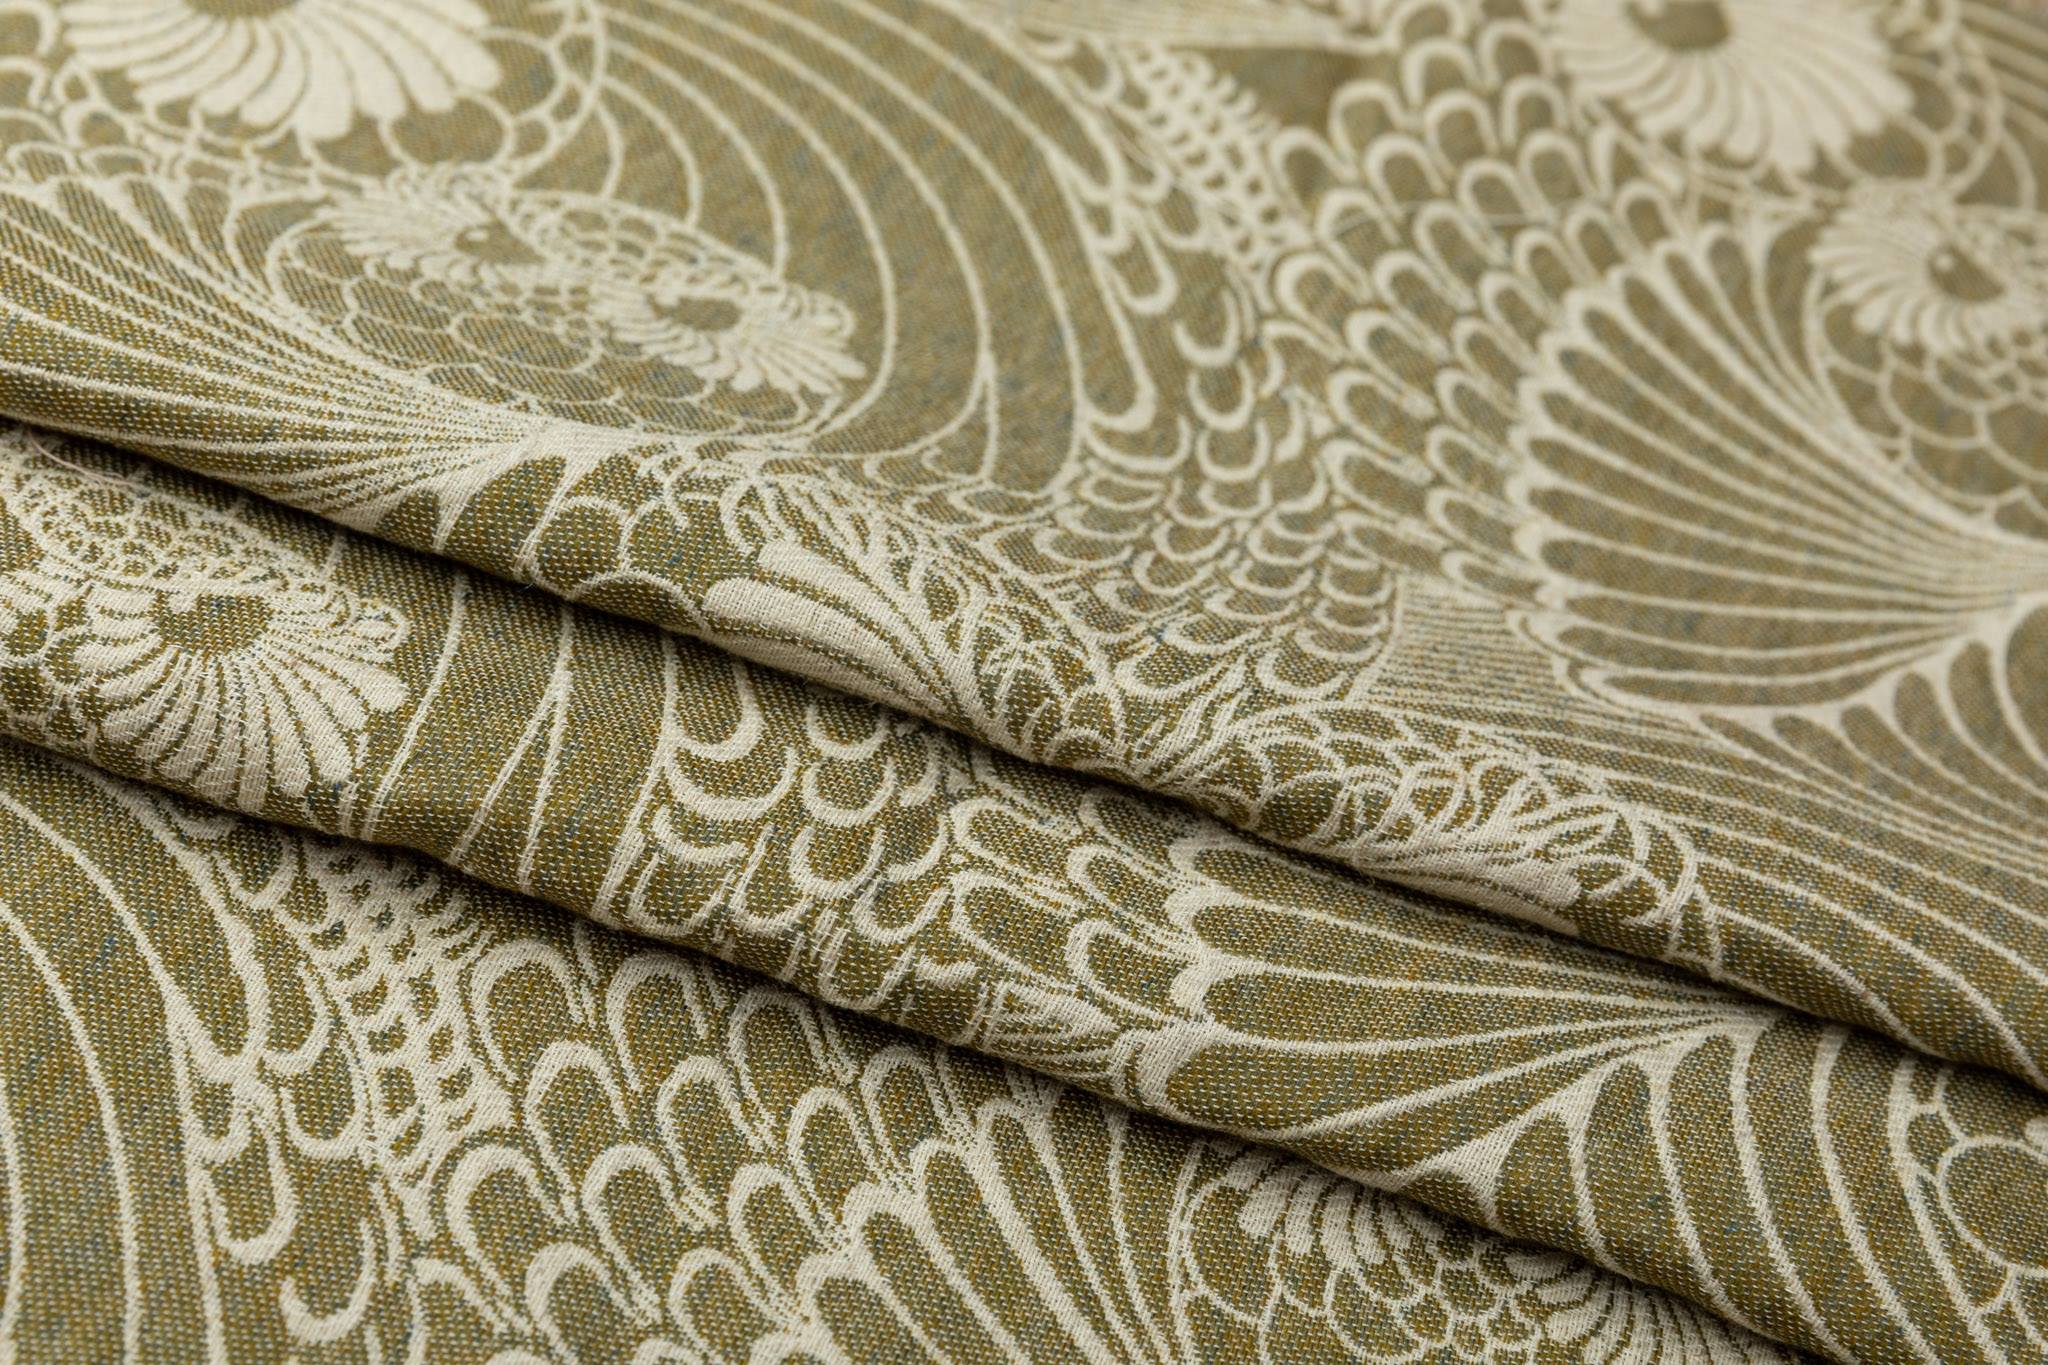 Linuschka Owls The Autumn Song Wrap (wool, linen, silk, cashmere) Image